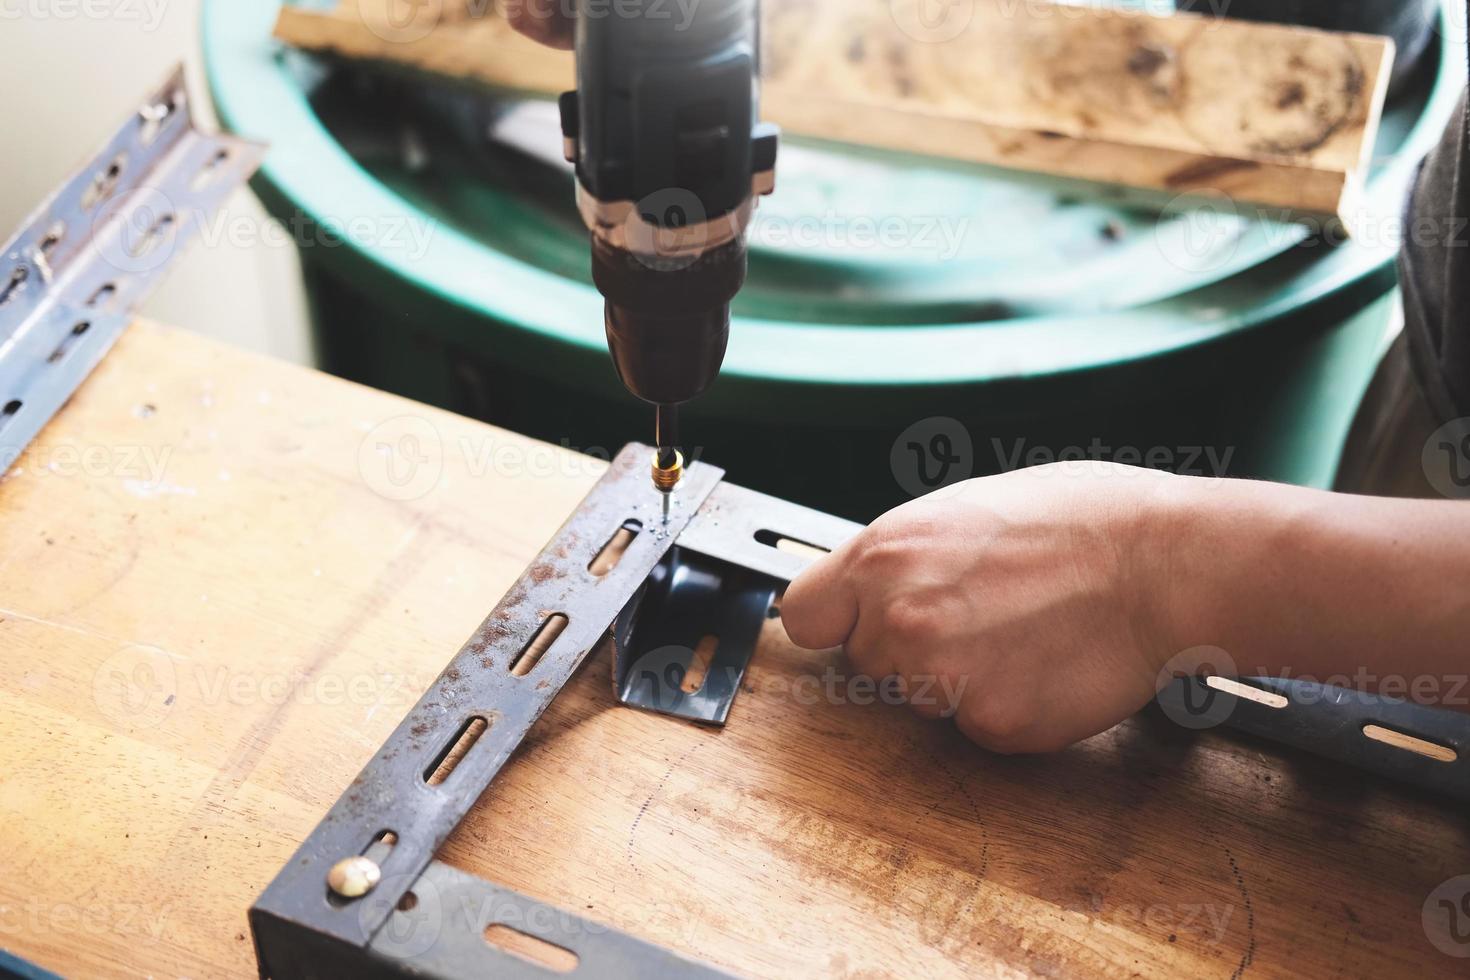 Do-it-yourself-Konzept verwenden Handwerker elektrische Bohrmaschinen, um alte Eisenteile zu montieren. mach ein regal an deinem freien wochenende foto